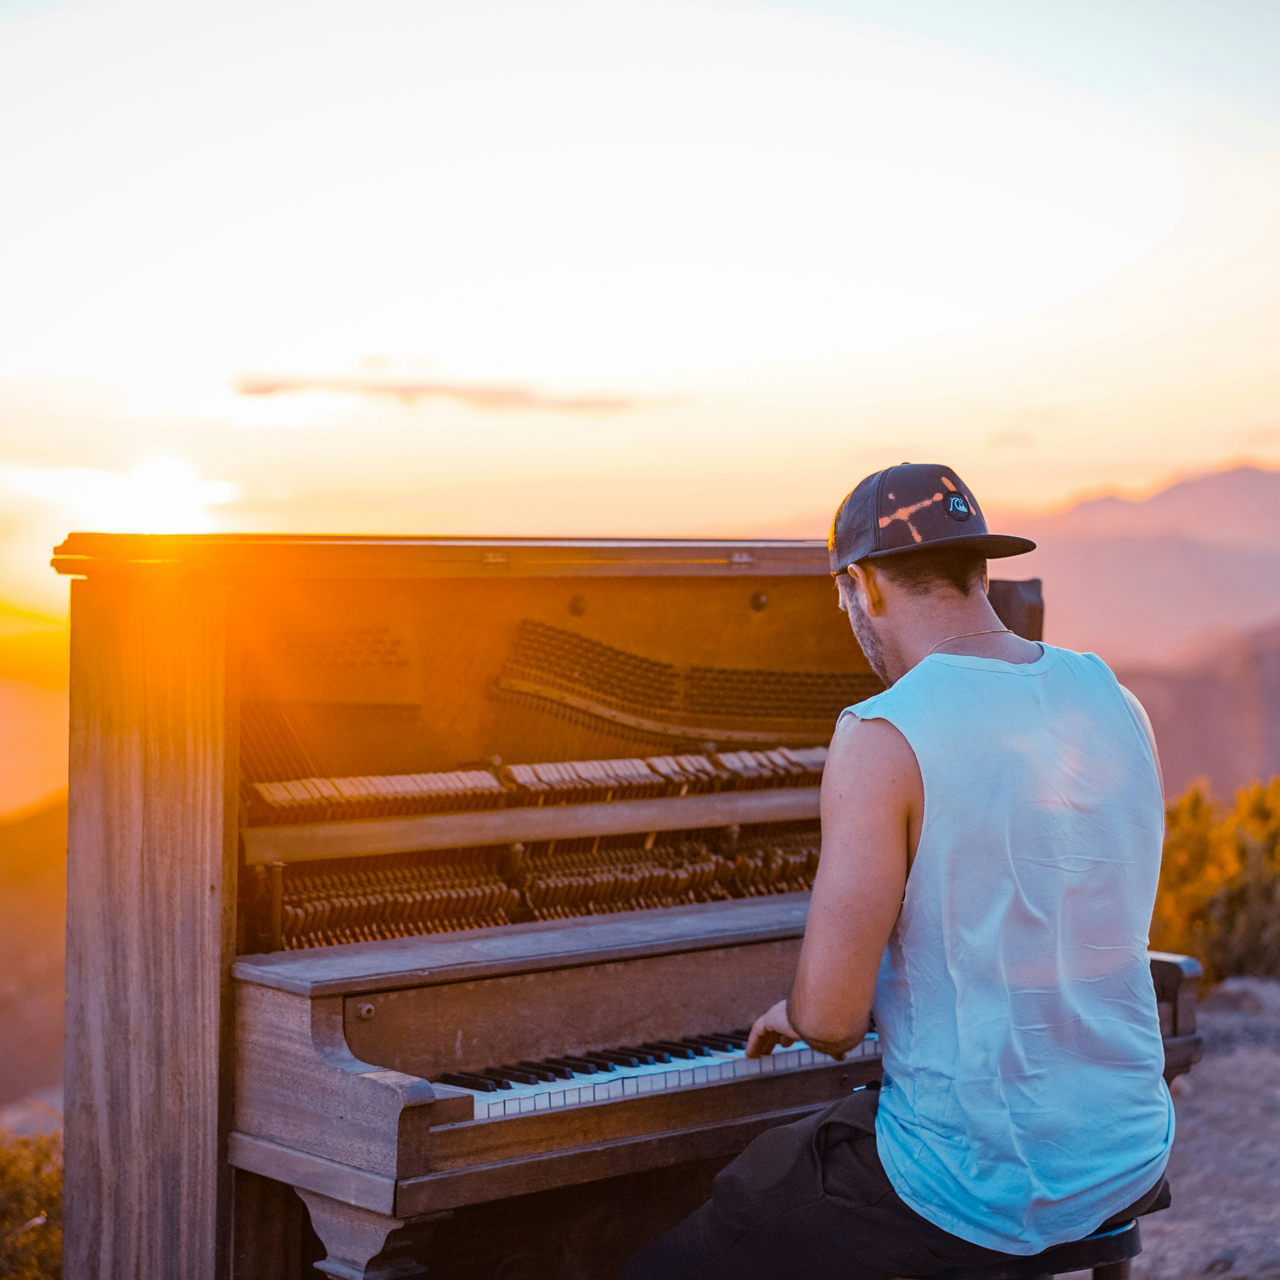 Un ragazzo con il cappellino che sta suonando il pianoforte al tramonto in un paesaggio collinare